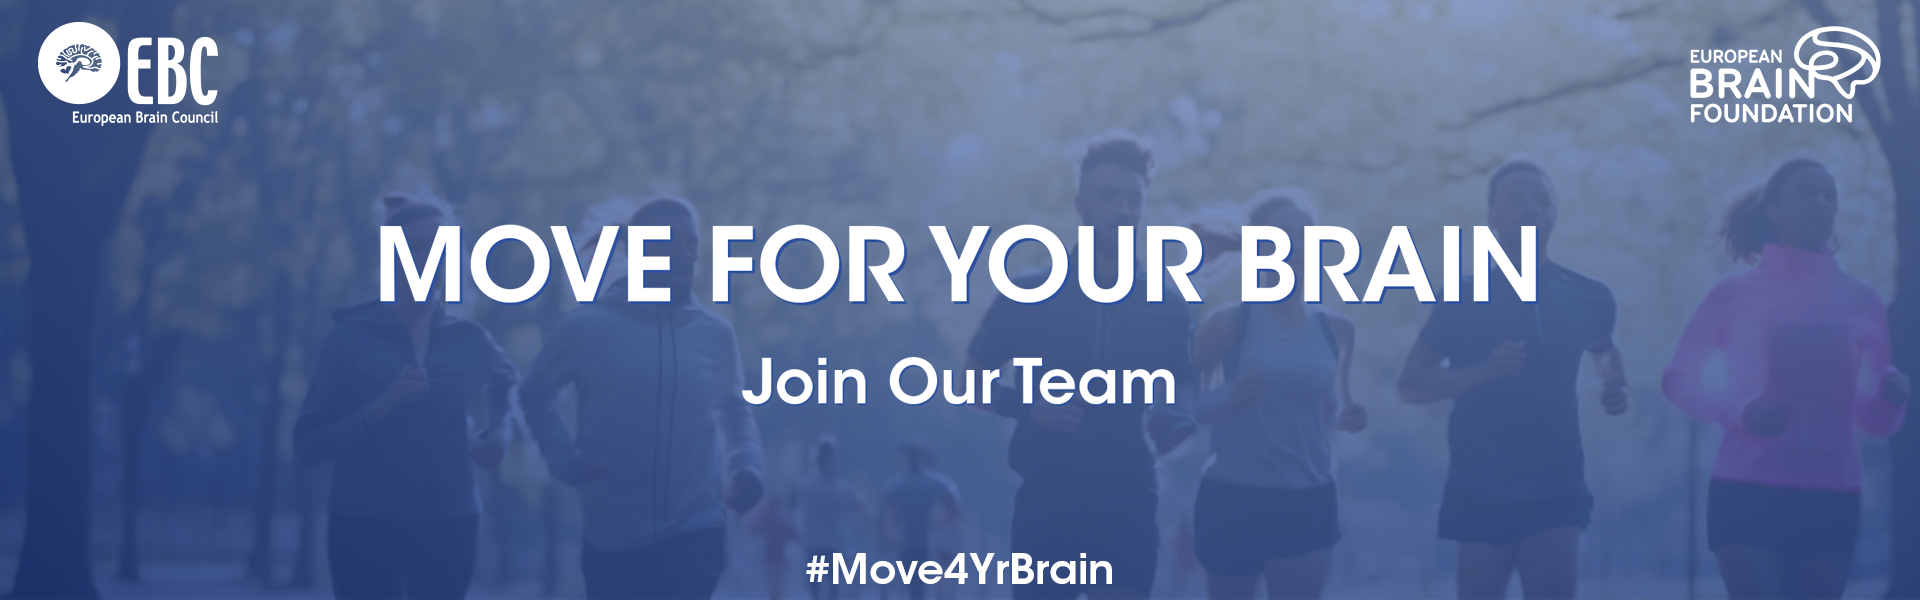 Move for your Brain EBC EBF Campaign Brain Health Sports